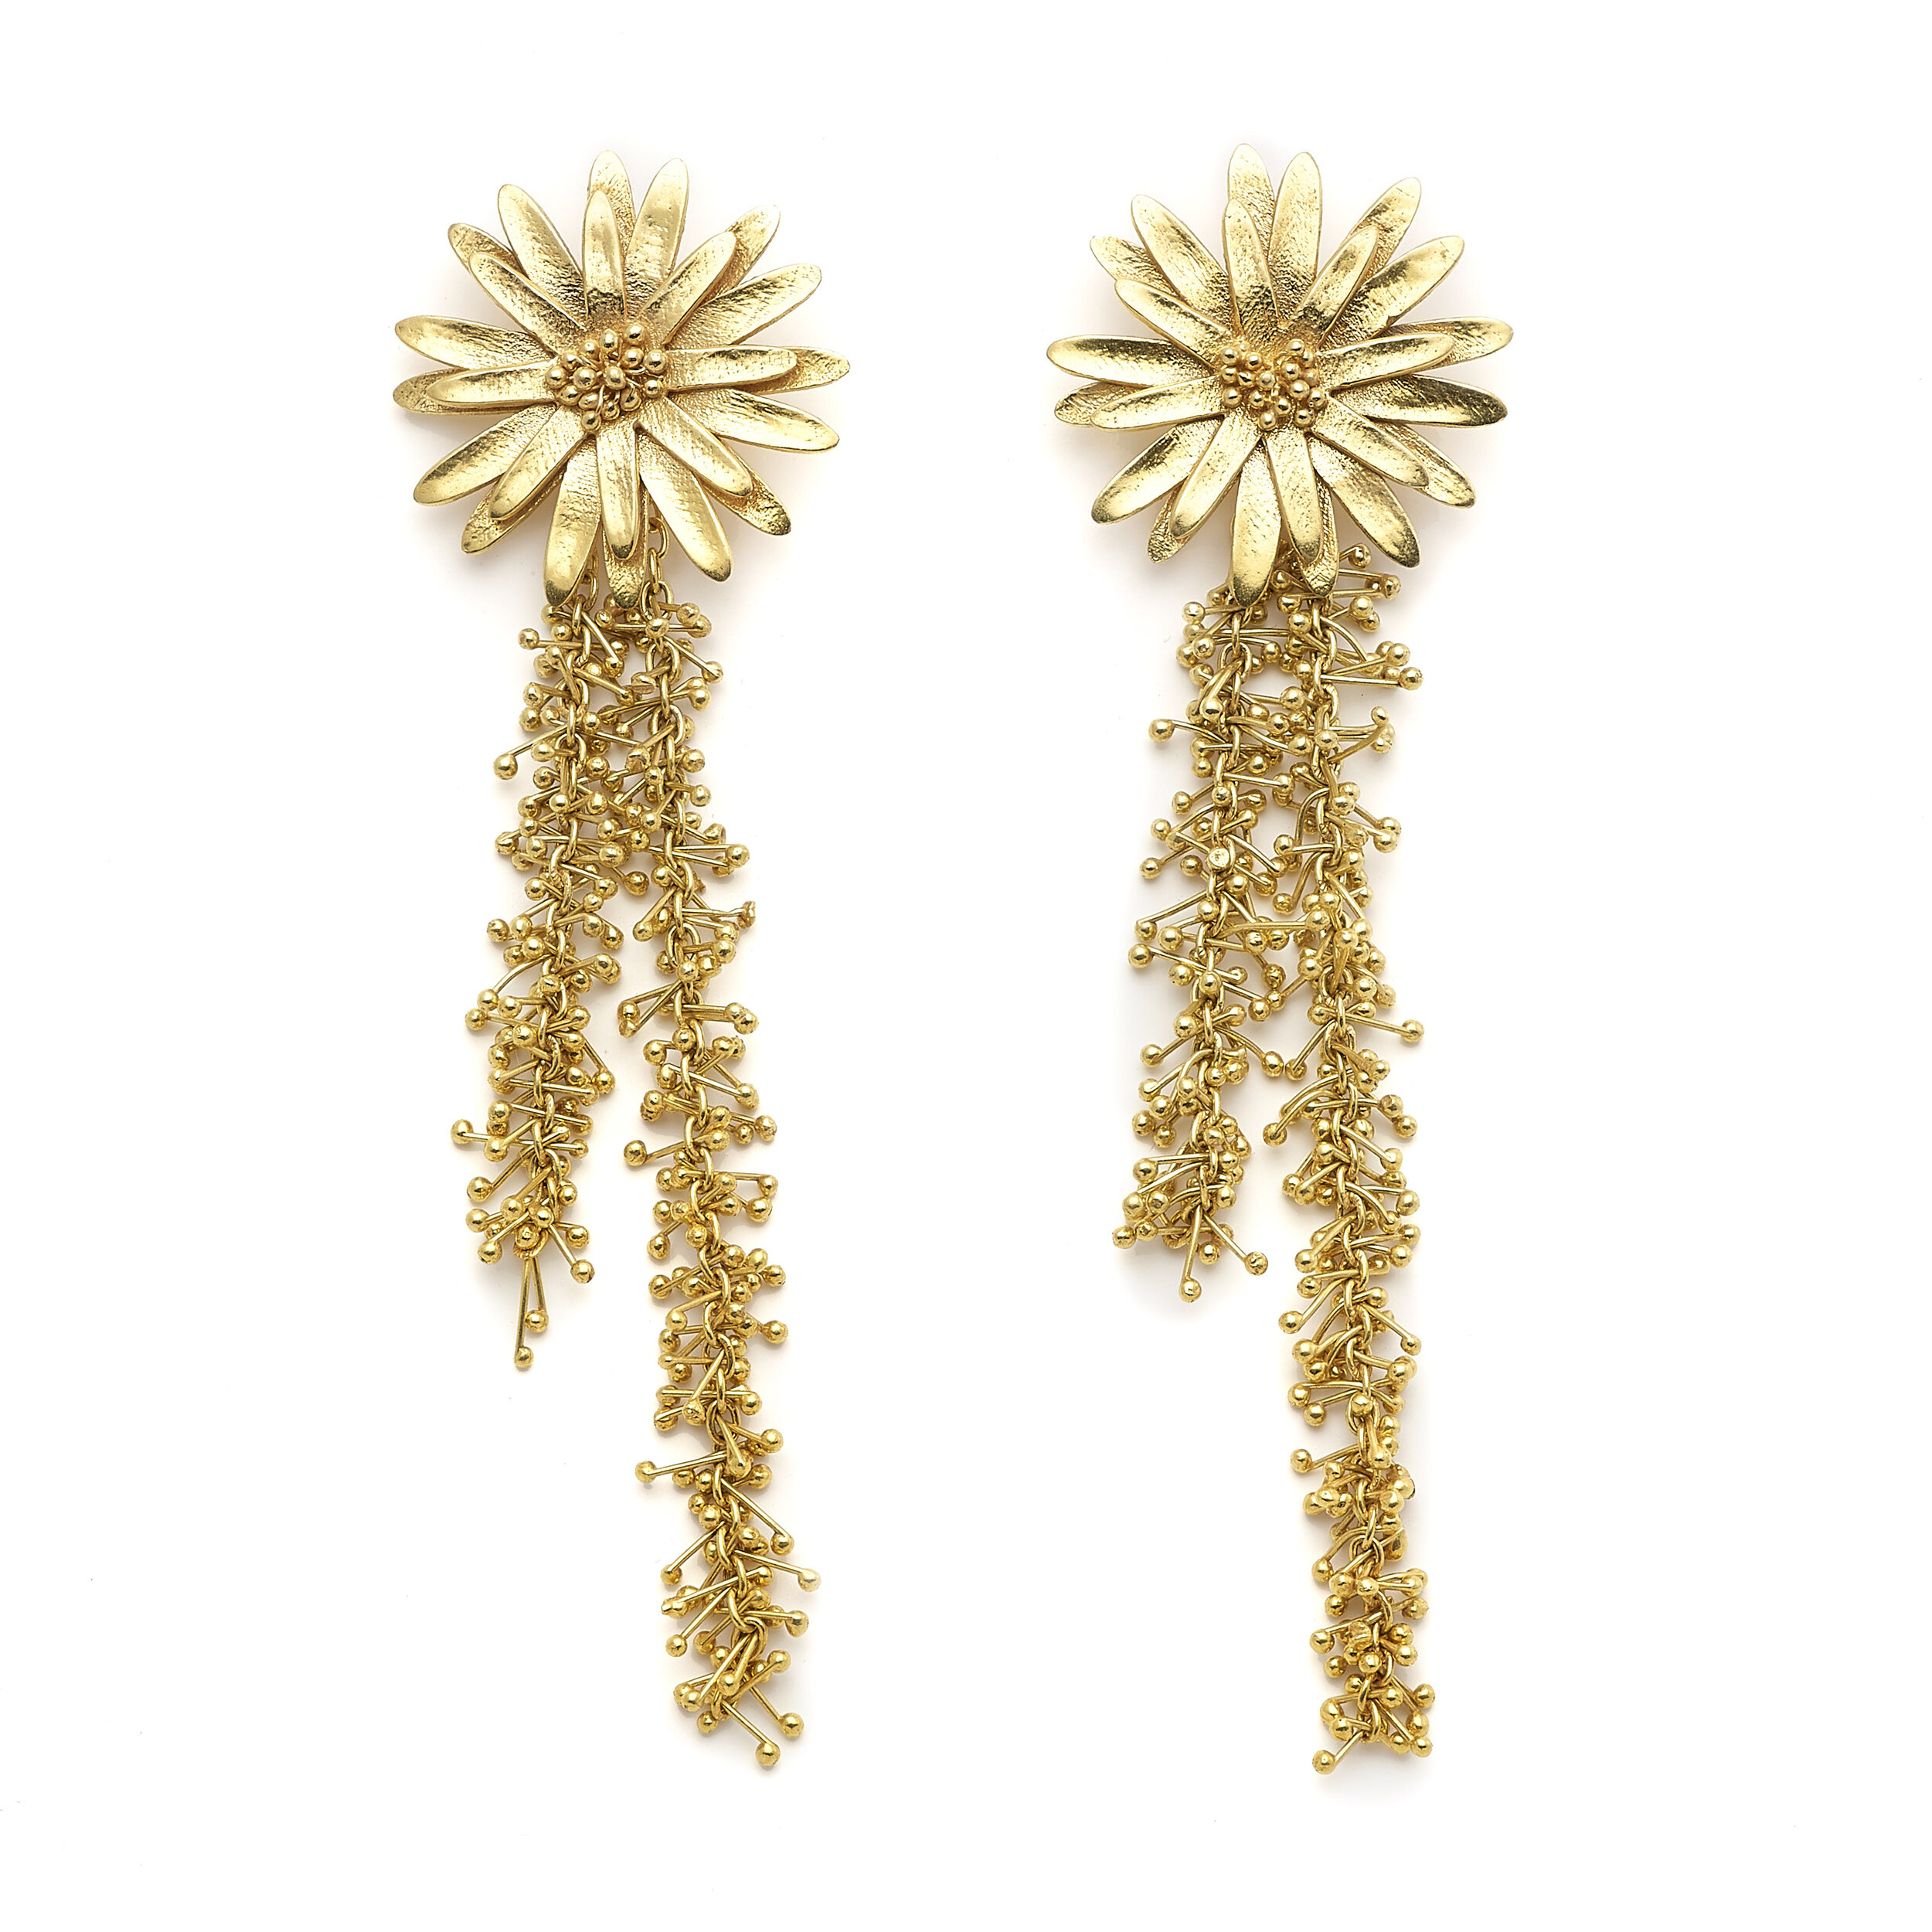 Christine Bekaert Starflower Beads in Gold — UFO No More